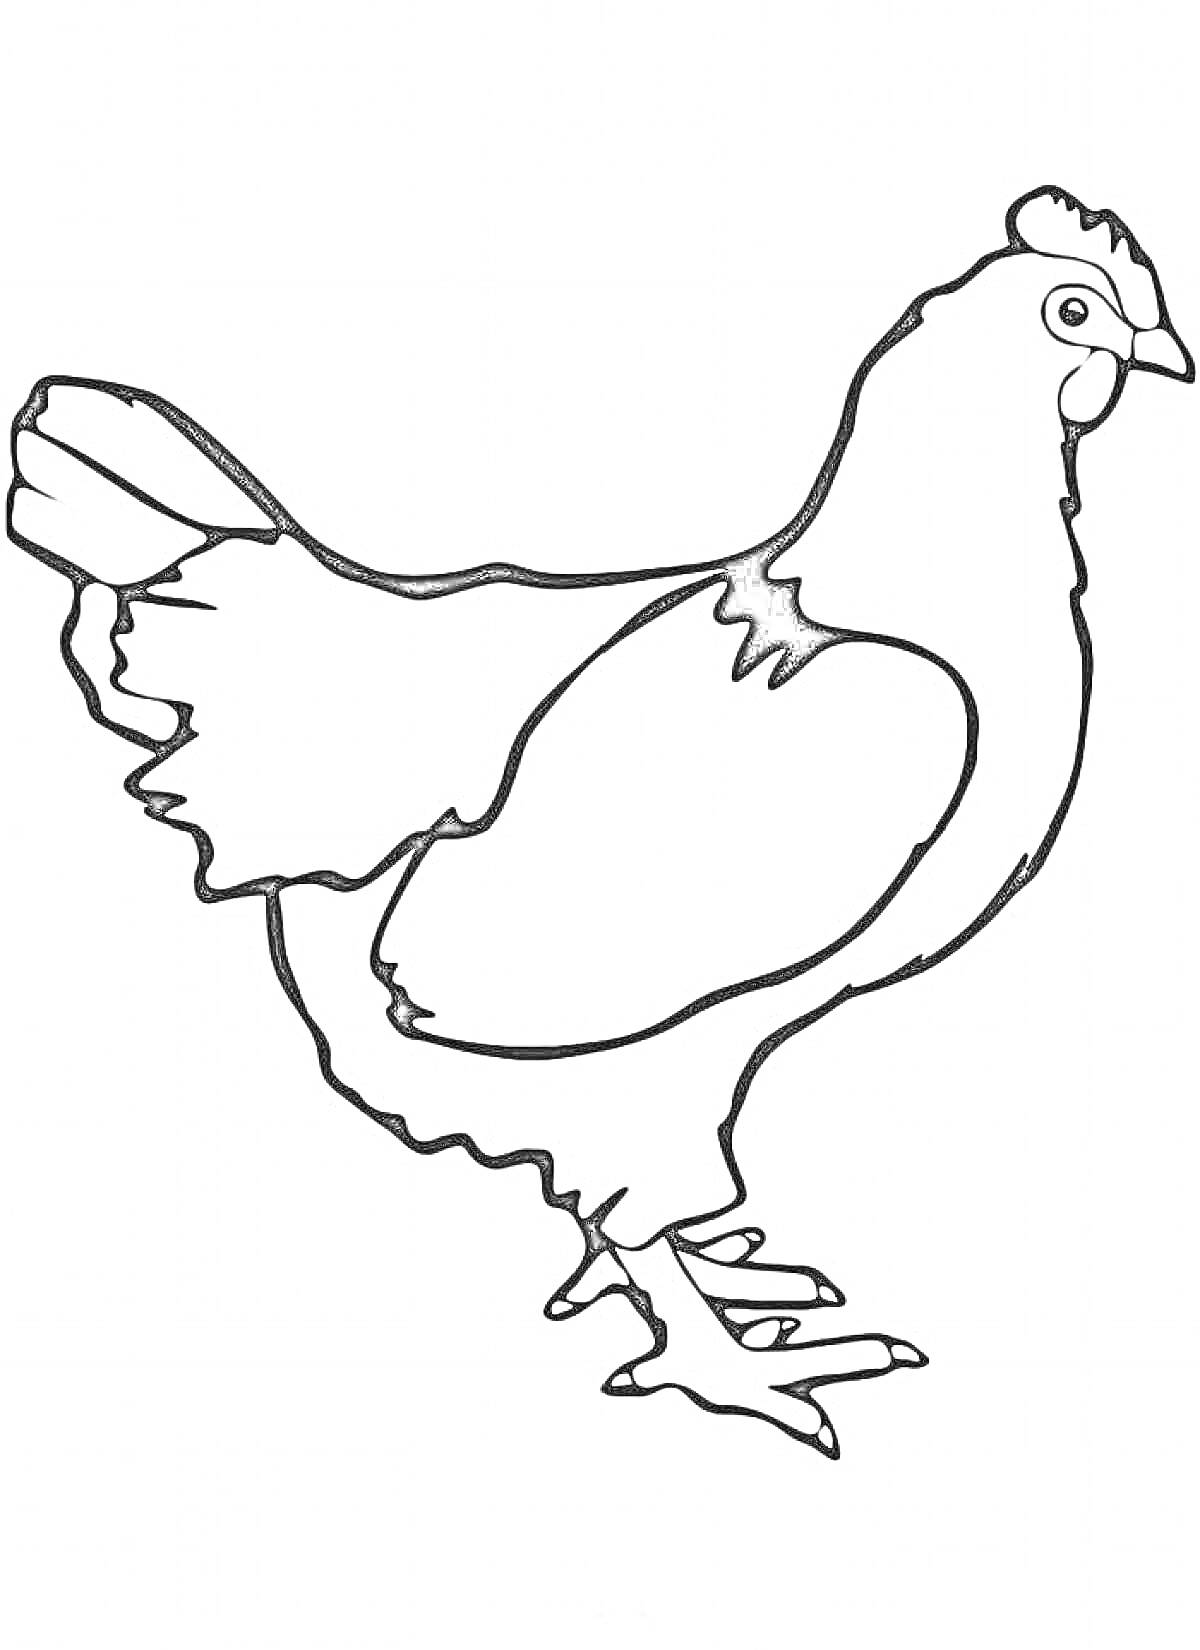 Курица с контурным изображением, вид сбоку